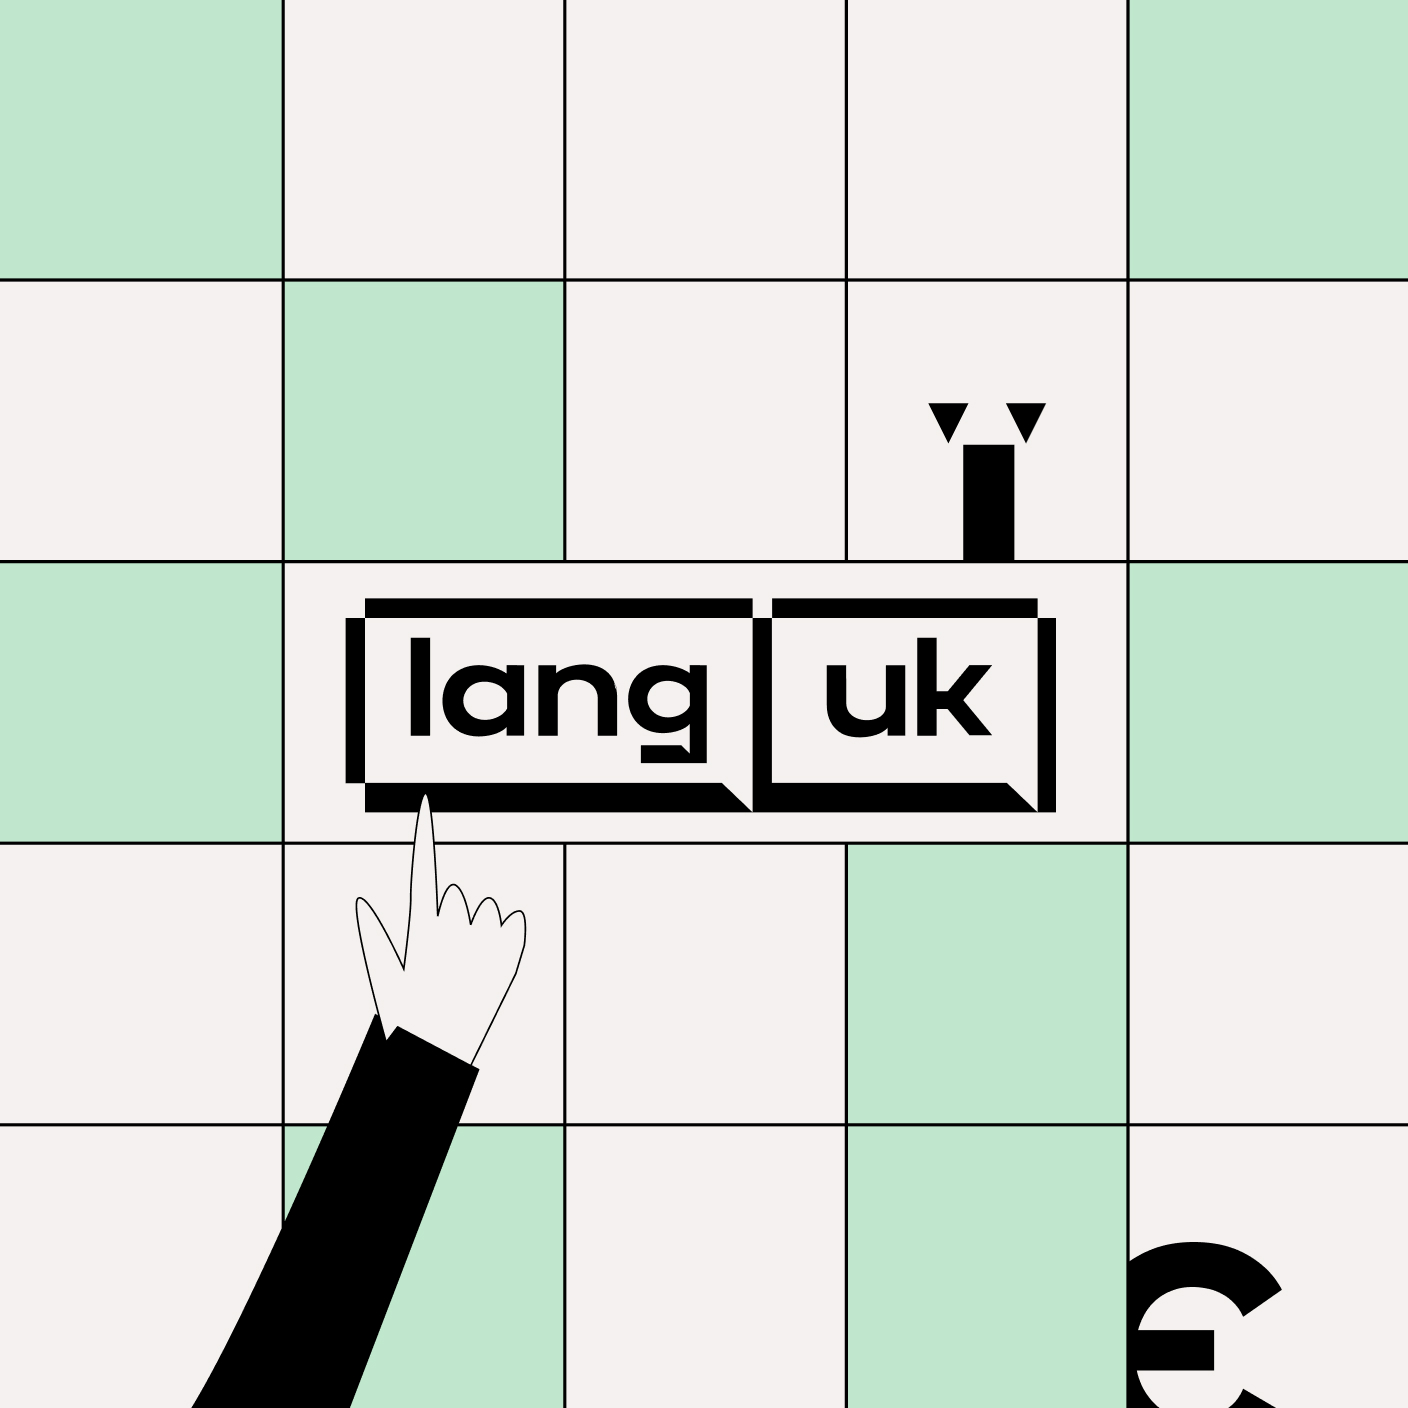 Lang-uk